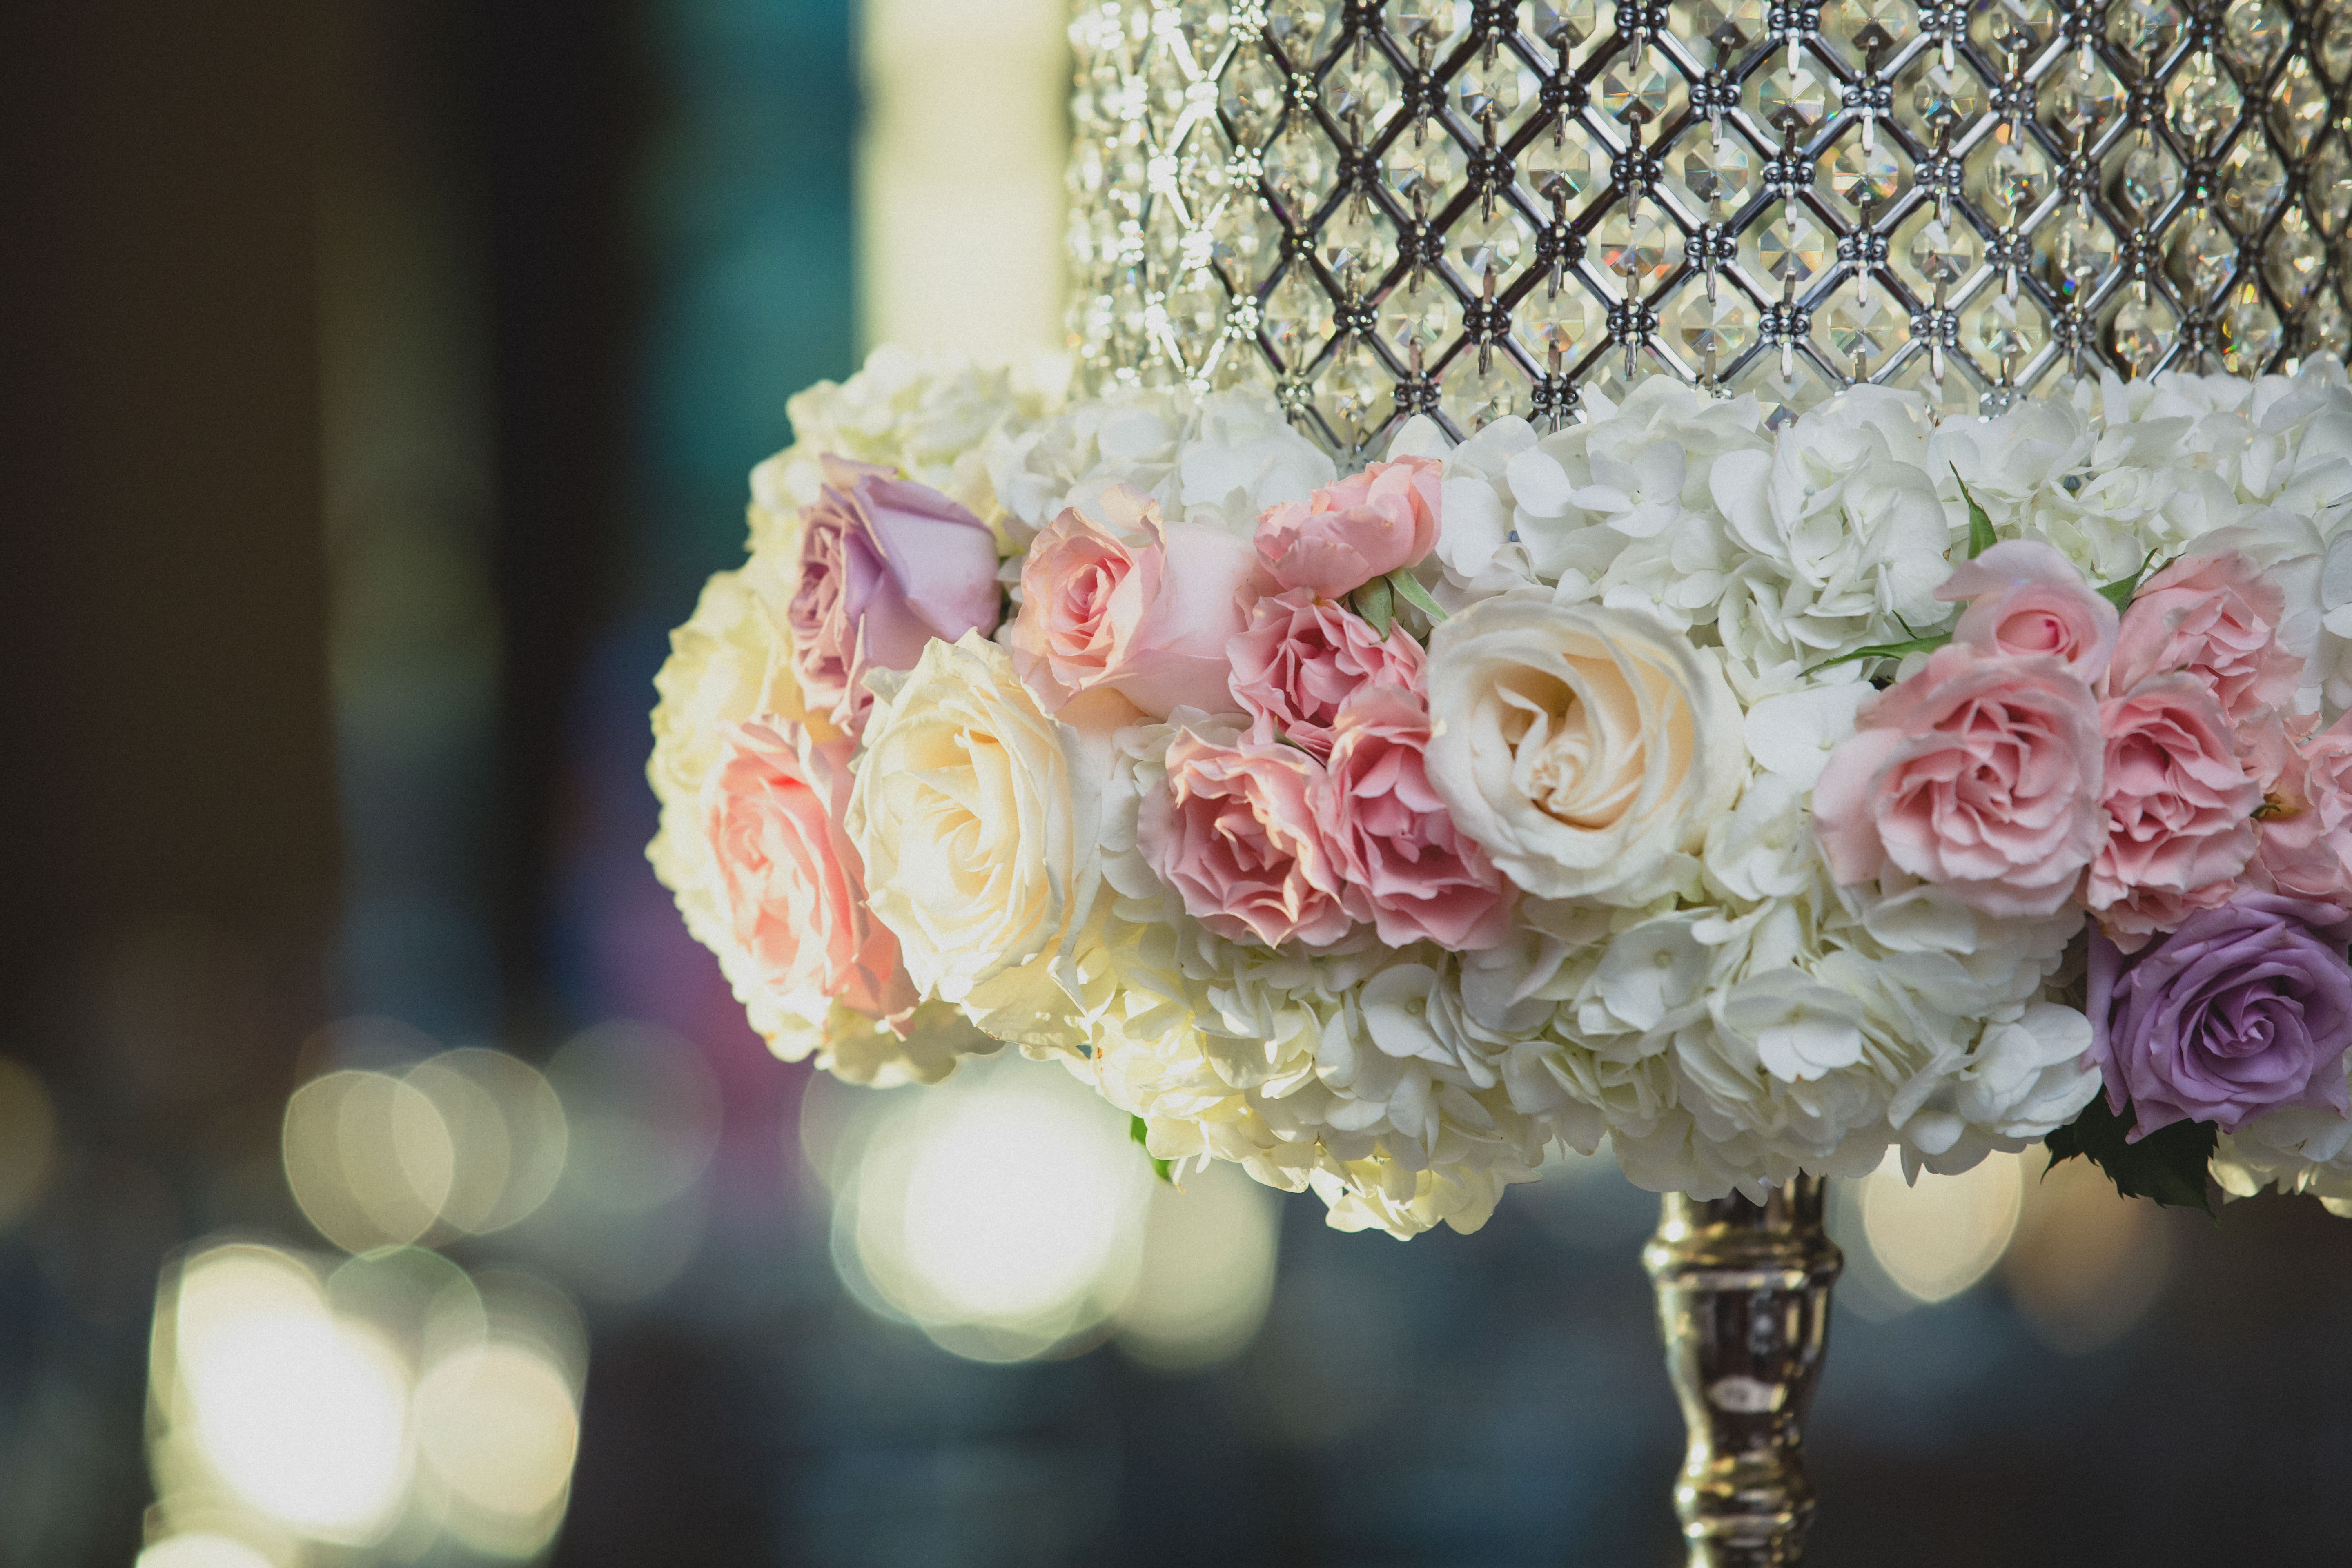 floral decor for a wedding centerpiece